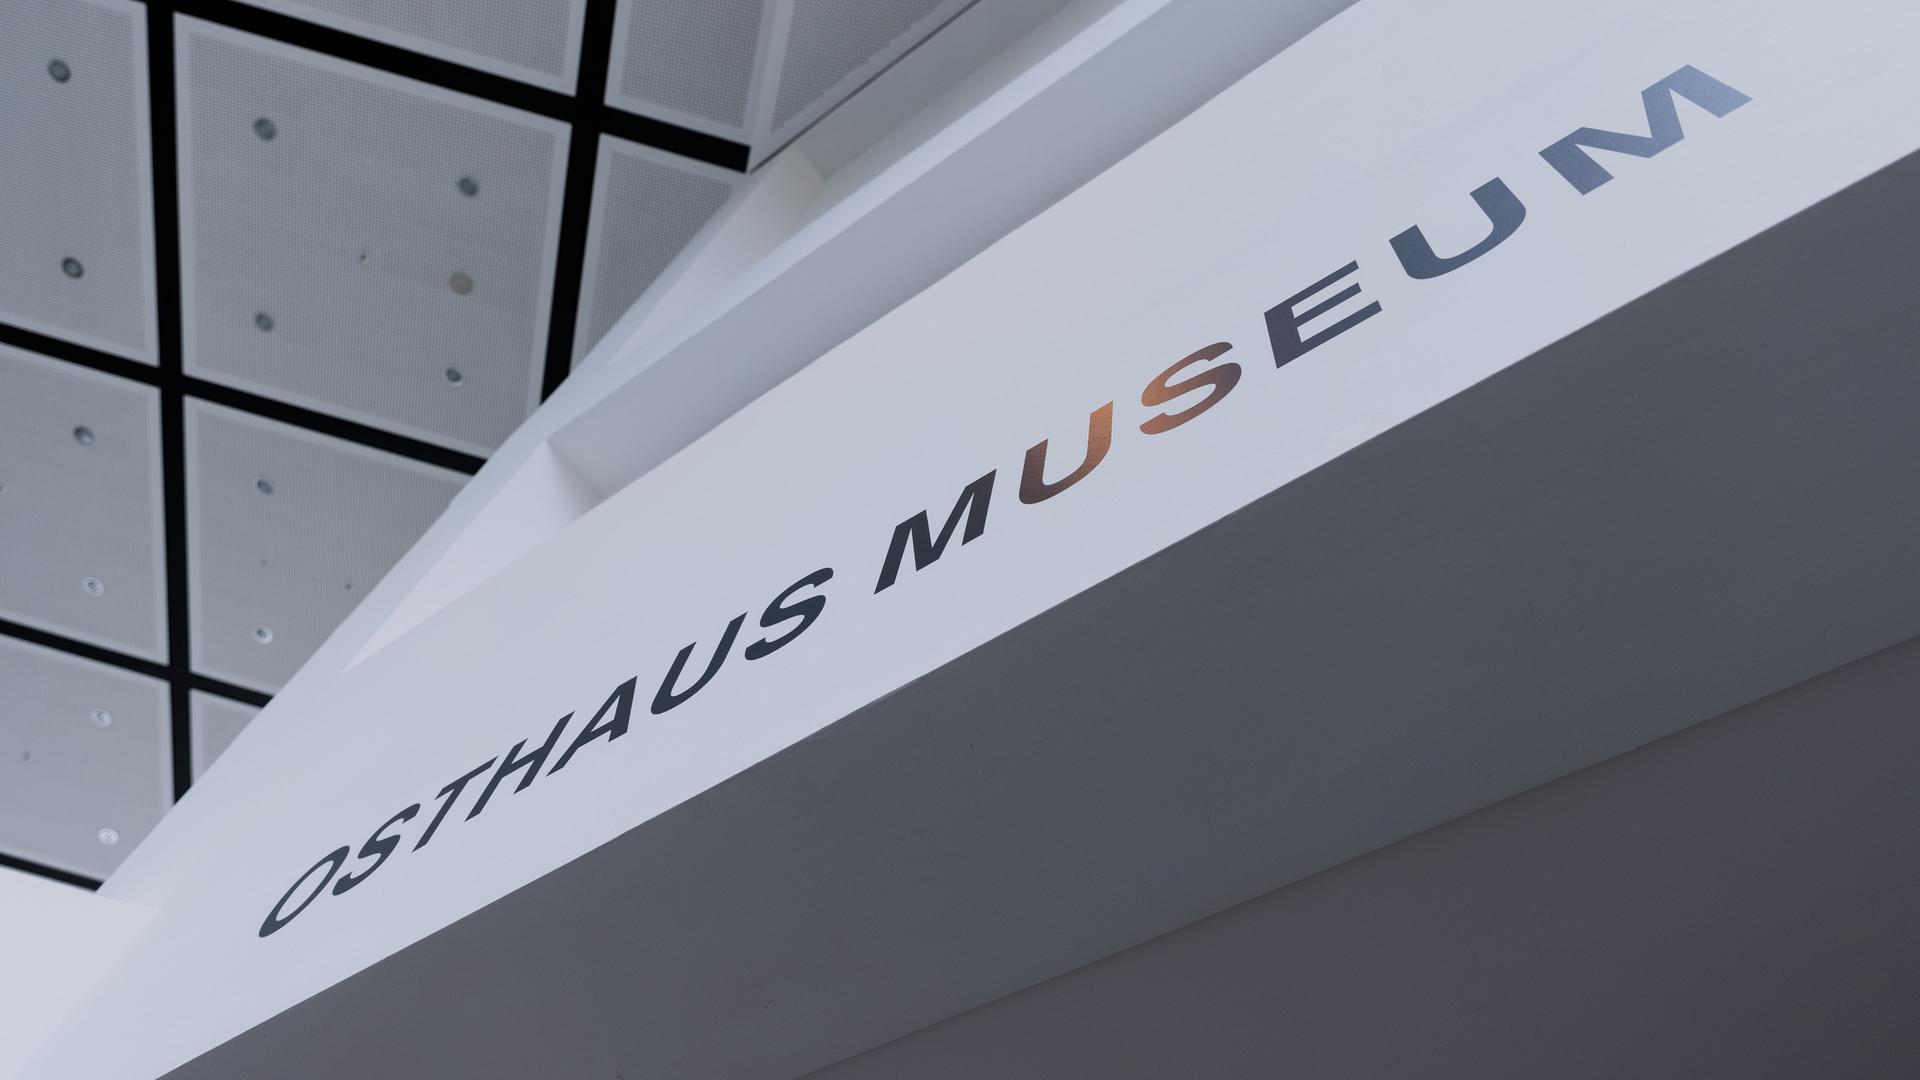 Blick in das Osthaus Museum Hagen mit dem Namen der Einrichtung als Schriftzug